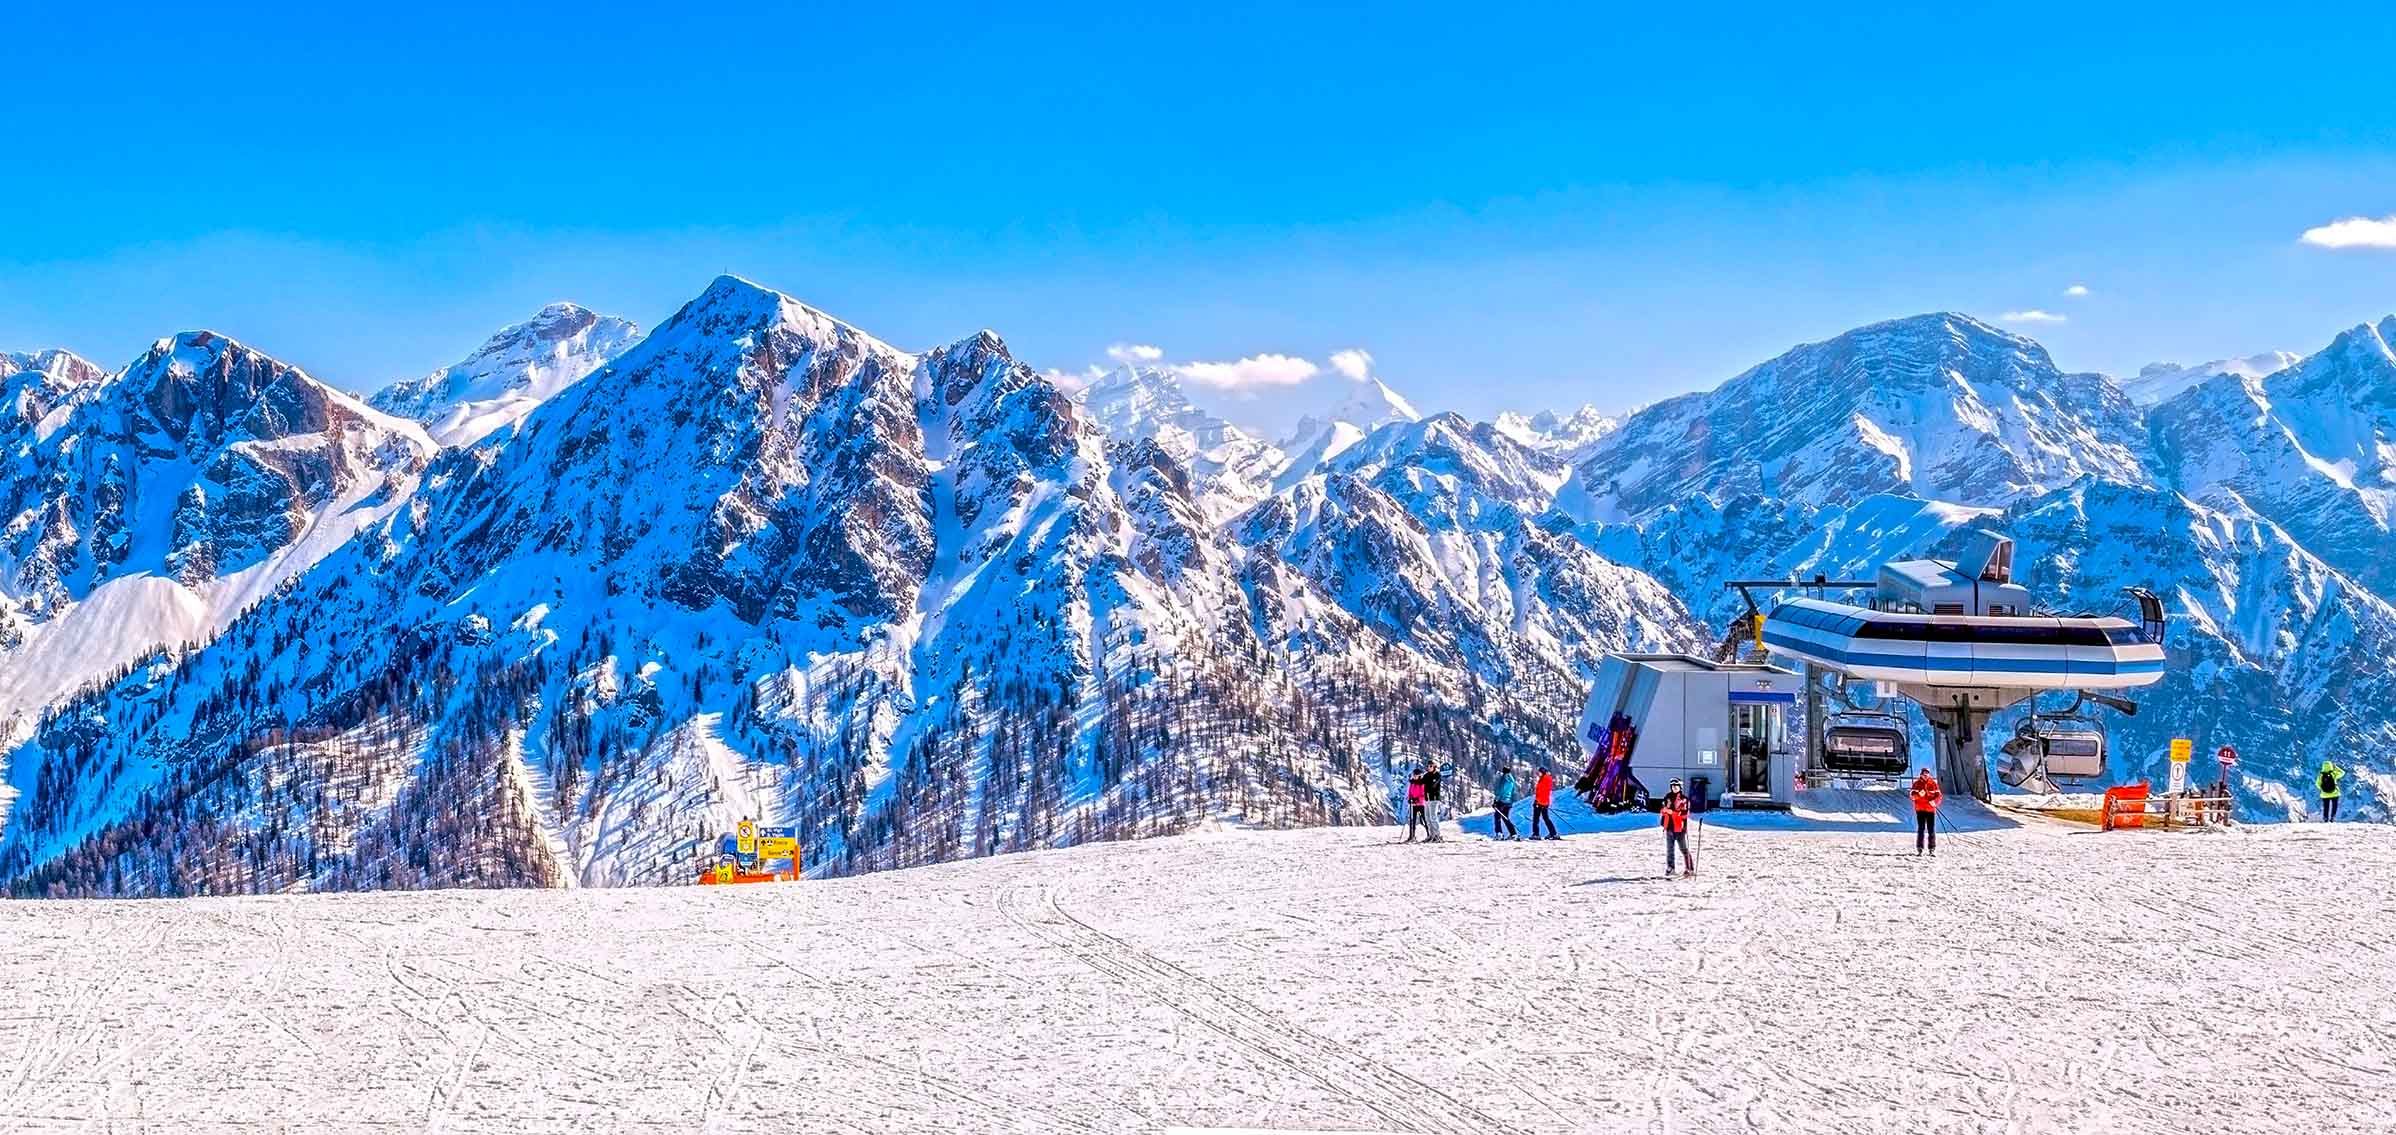 San Vigilio di Marebbe / Plan de Corones ski area